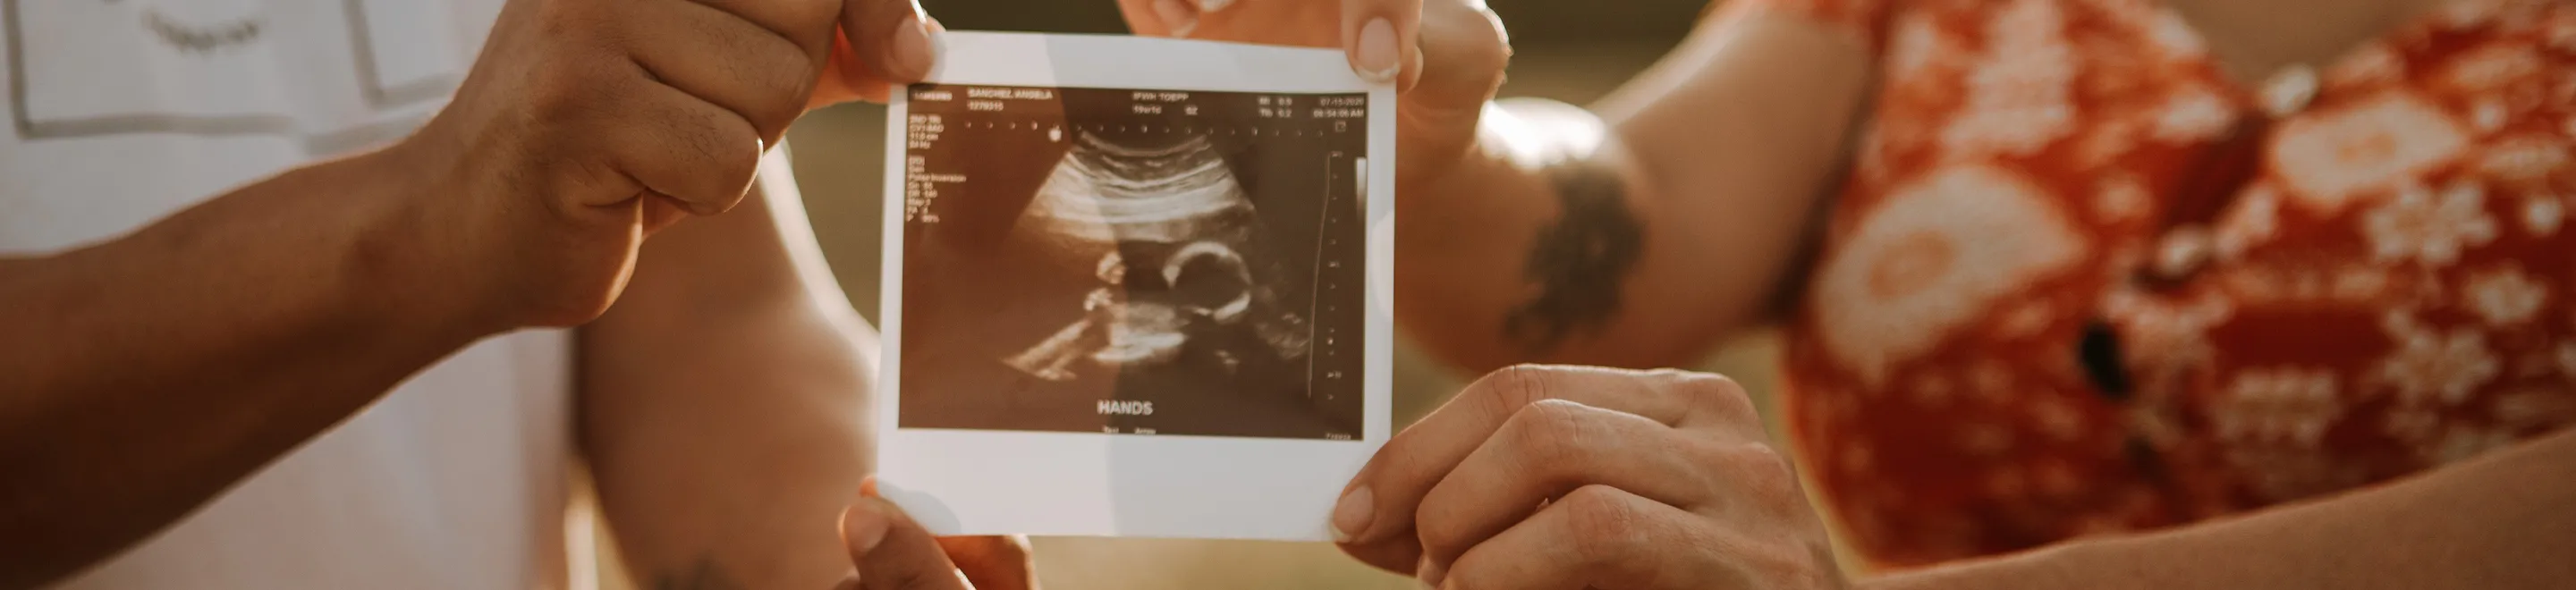 Zwei Personen halten ein Ultraschallbild mit einem Baby in der Hand.